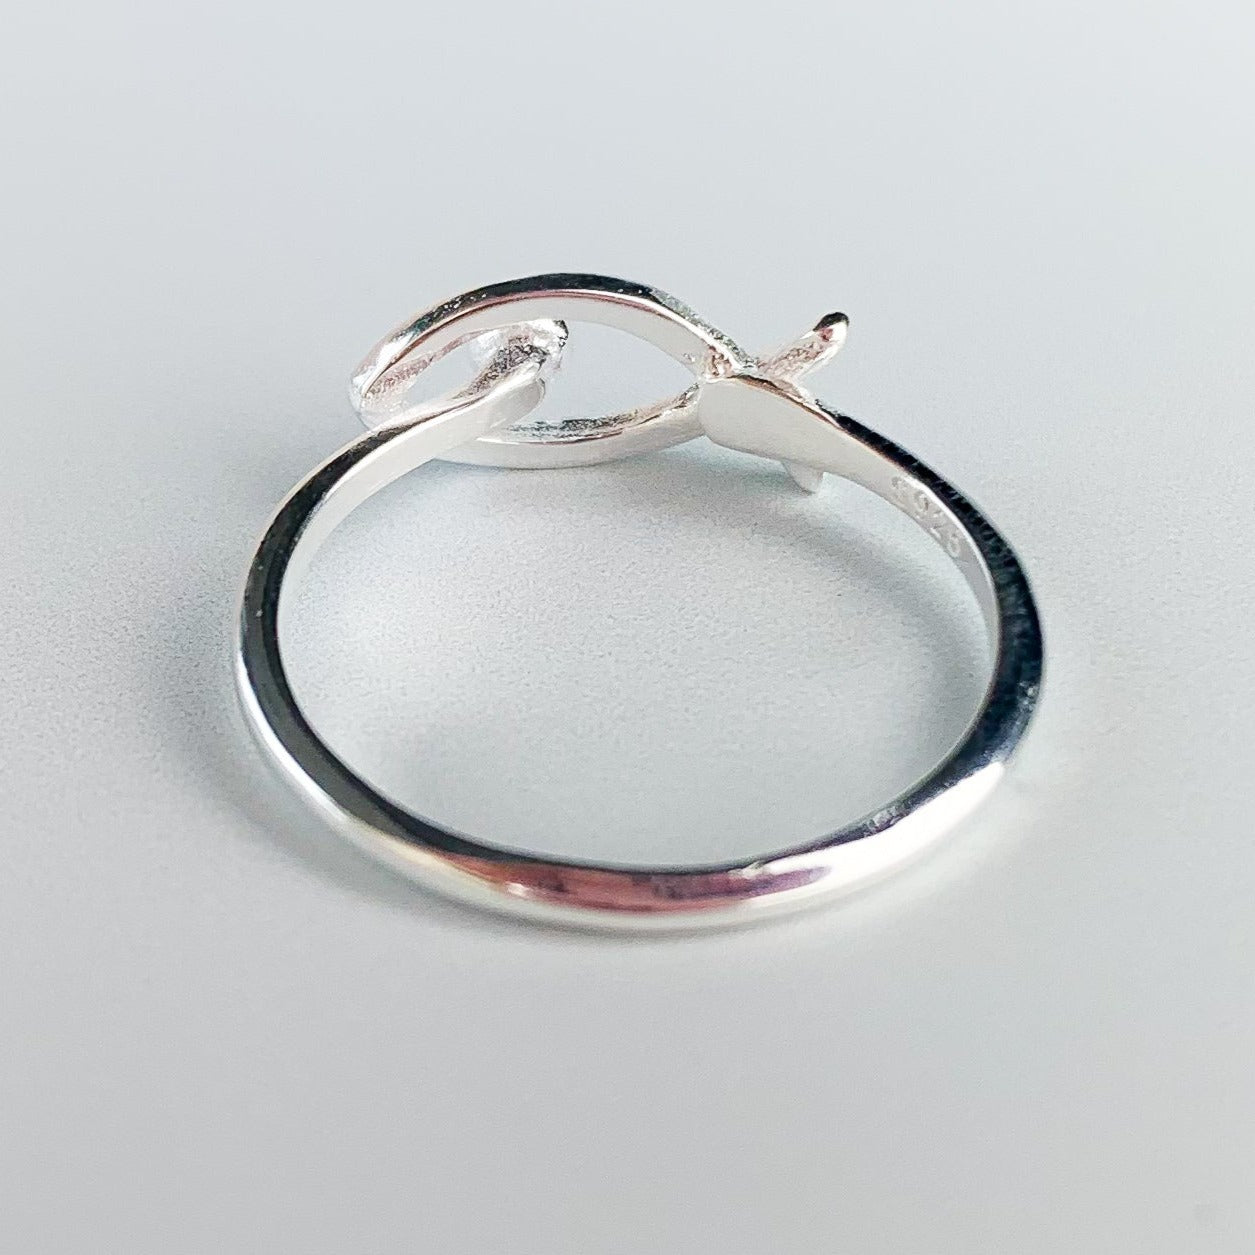 Minimalist Fish Adjustable Ring